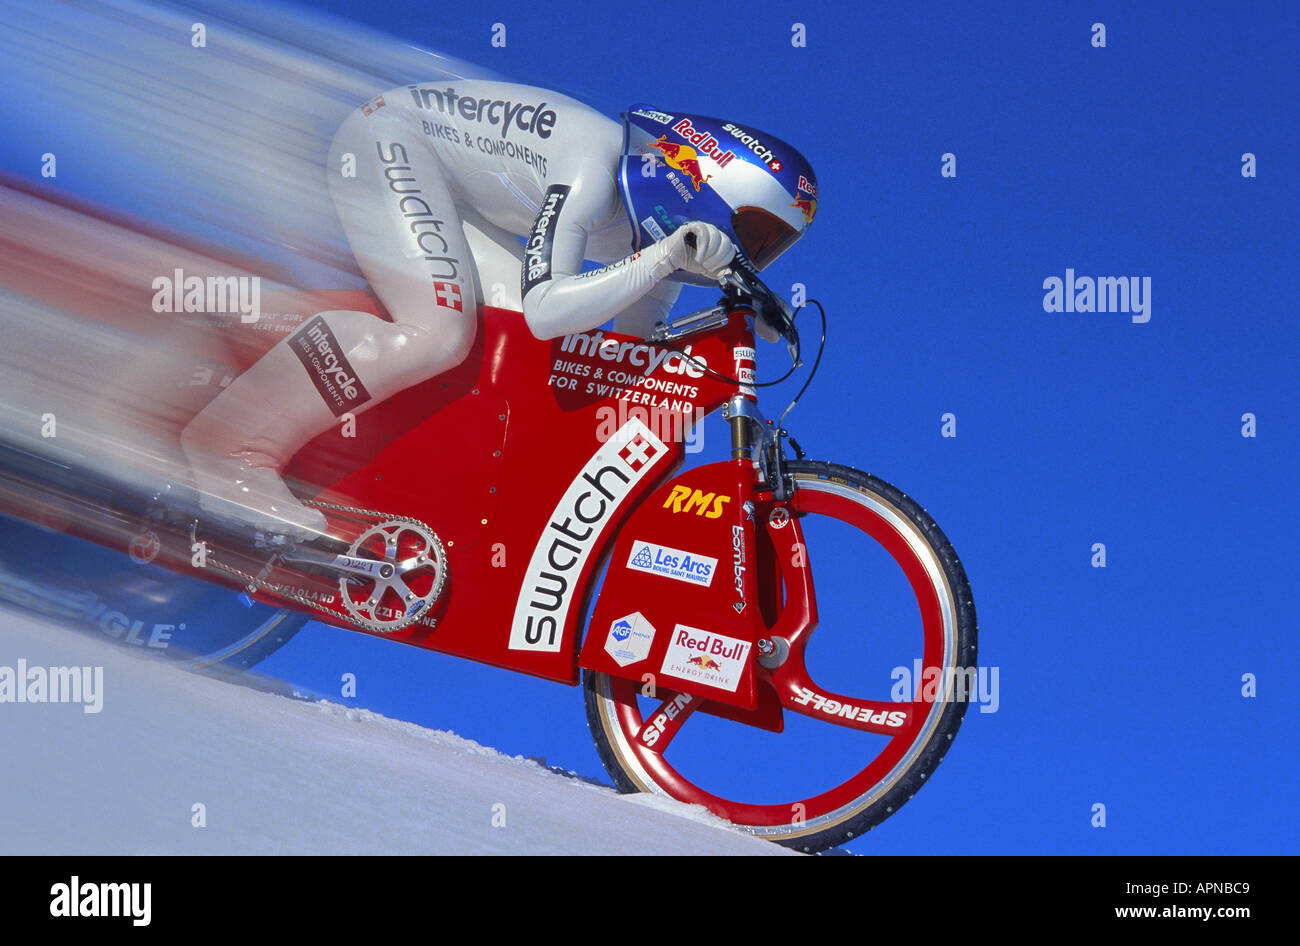 Alta velocidad, alta velocidad snowbiker snowbiking en pendiente pronunciada vestidos de traje y el casco de carreras. Foto de stock